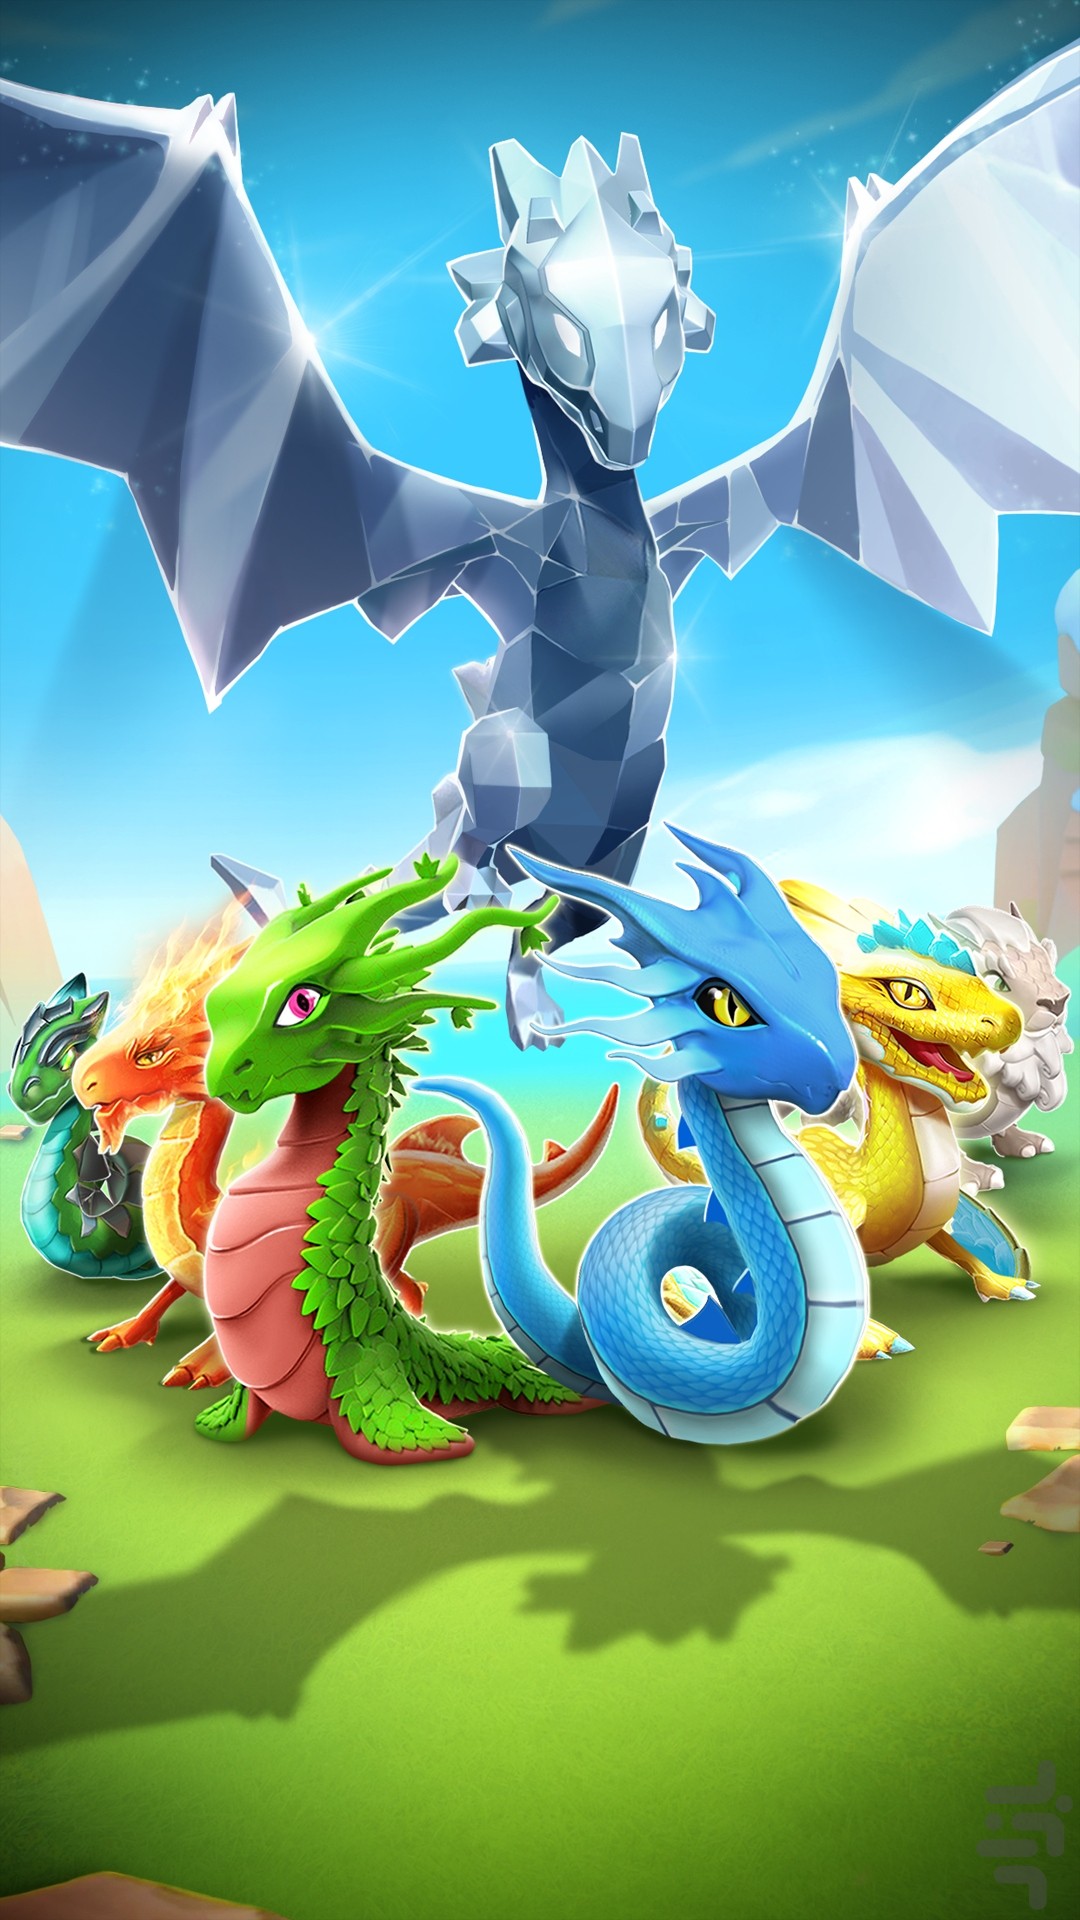 dragon mania legends wont accept friend codes